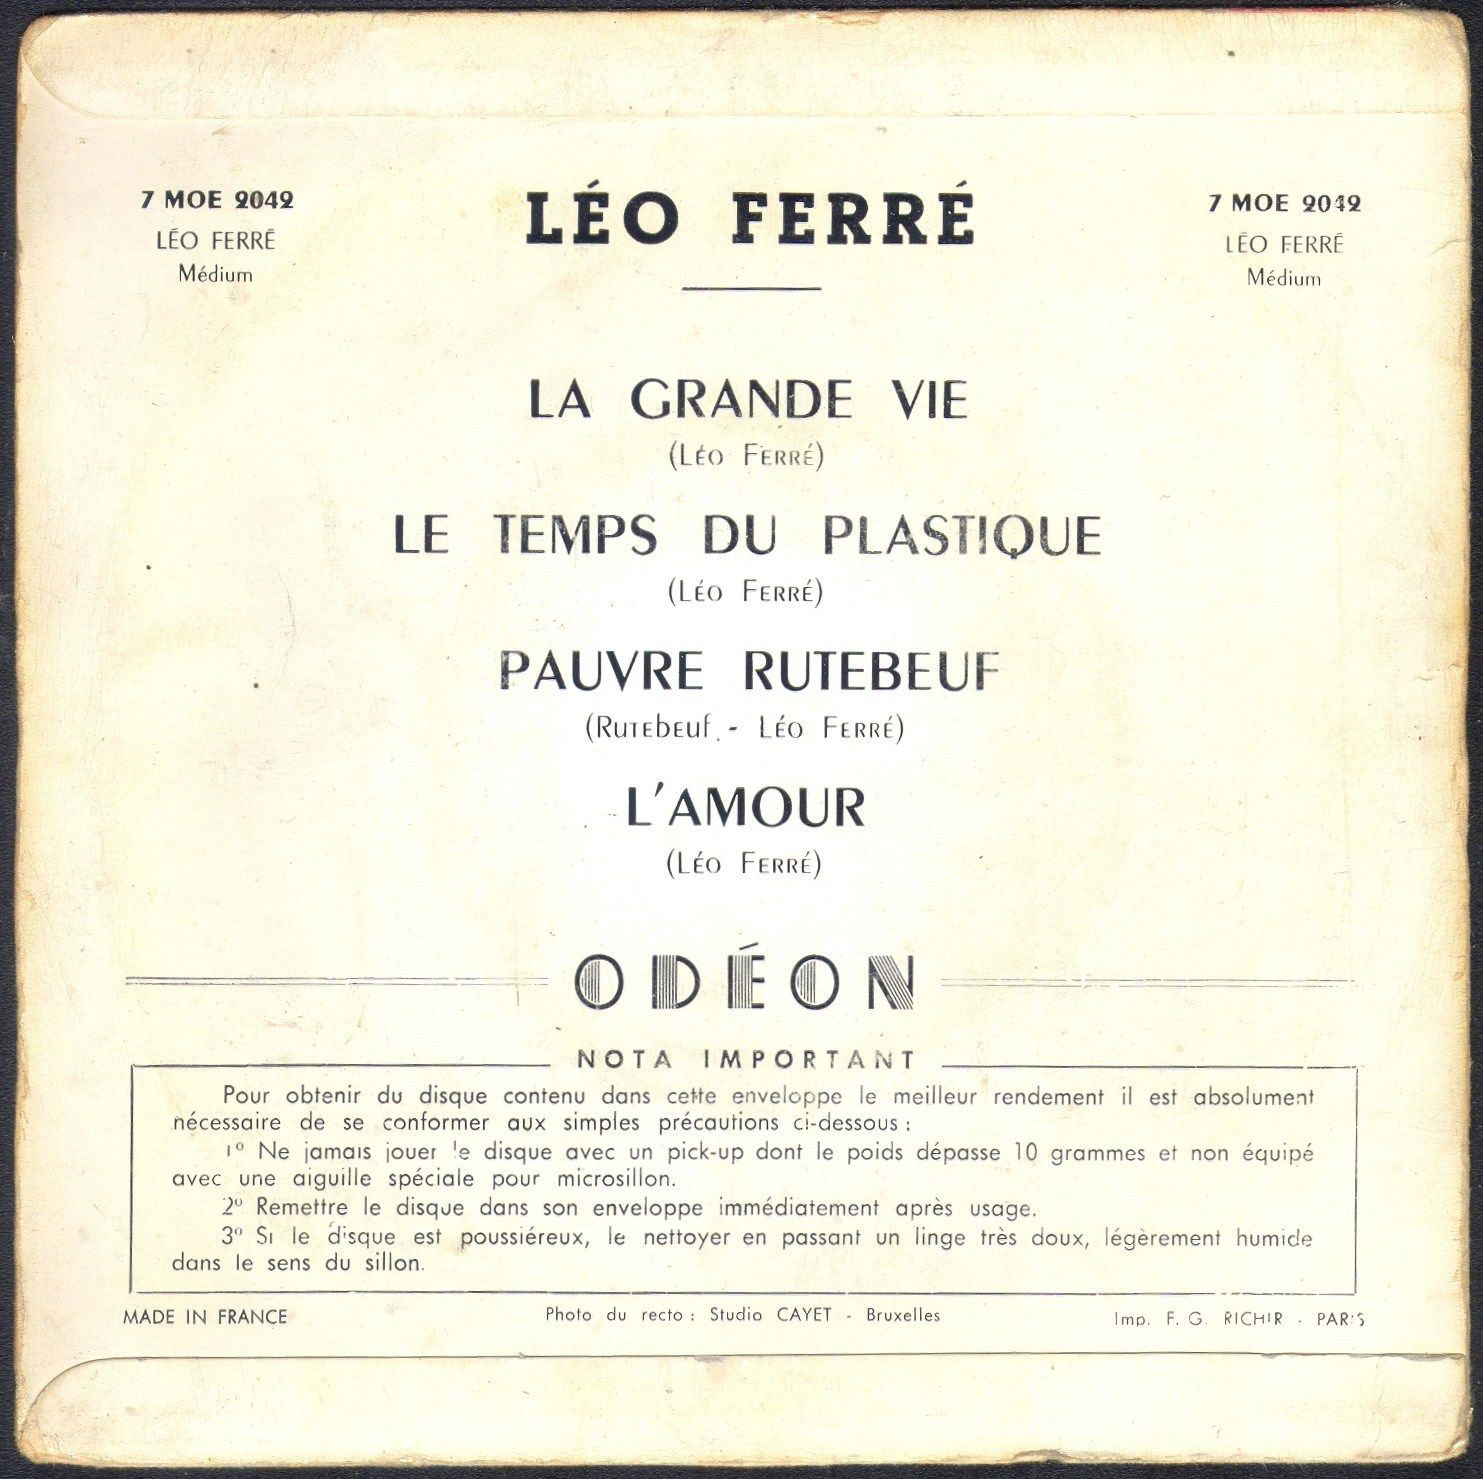 Léo Ferré - 45 TMOE 2042